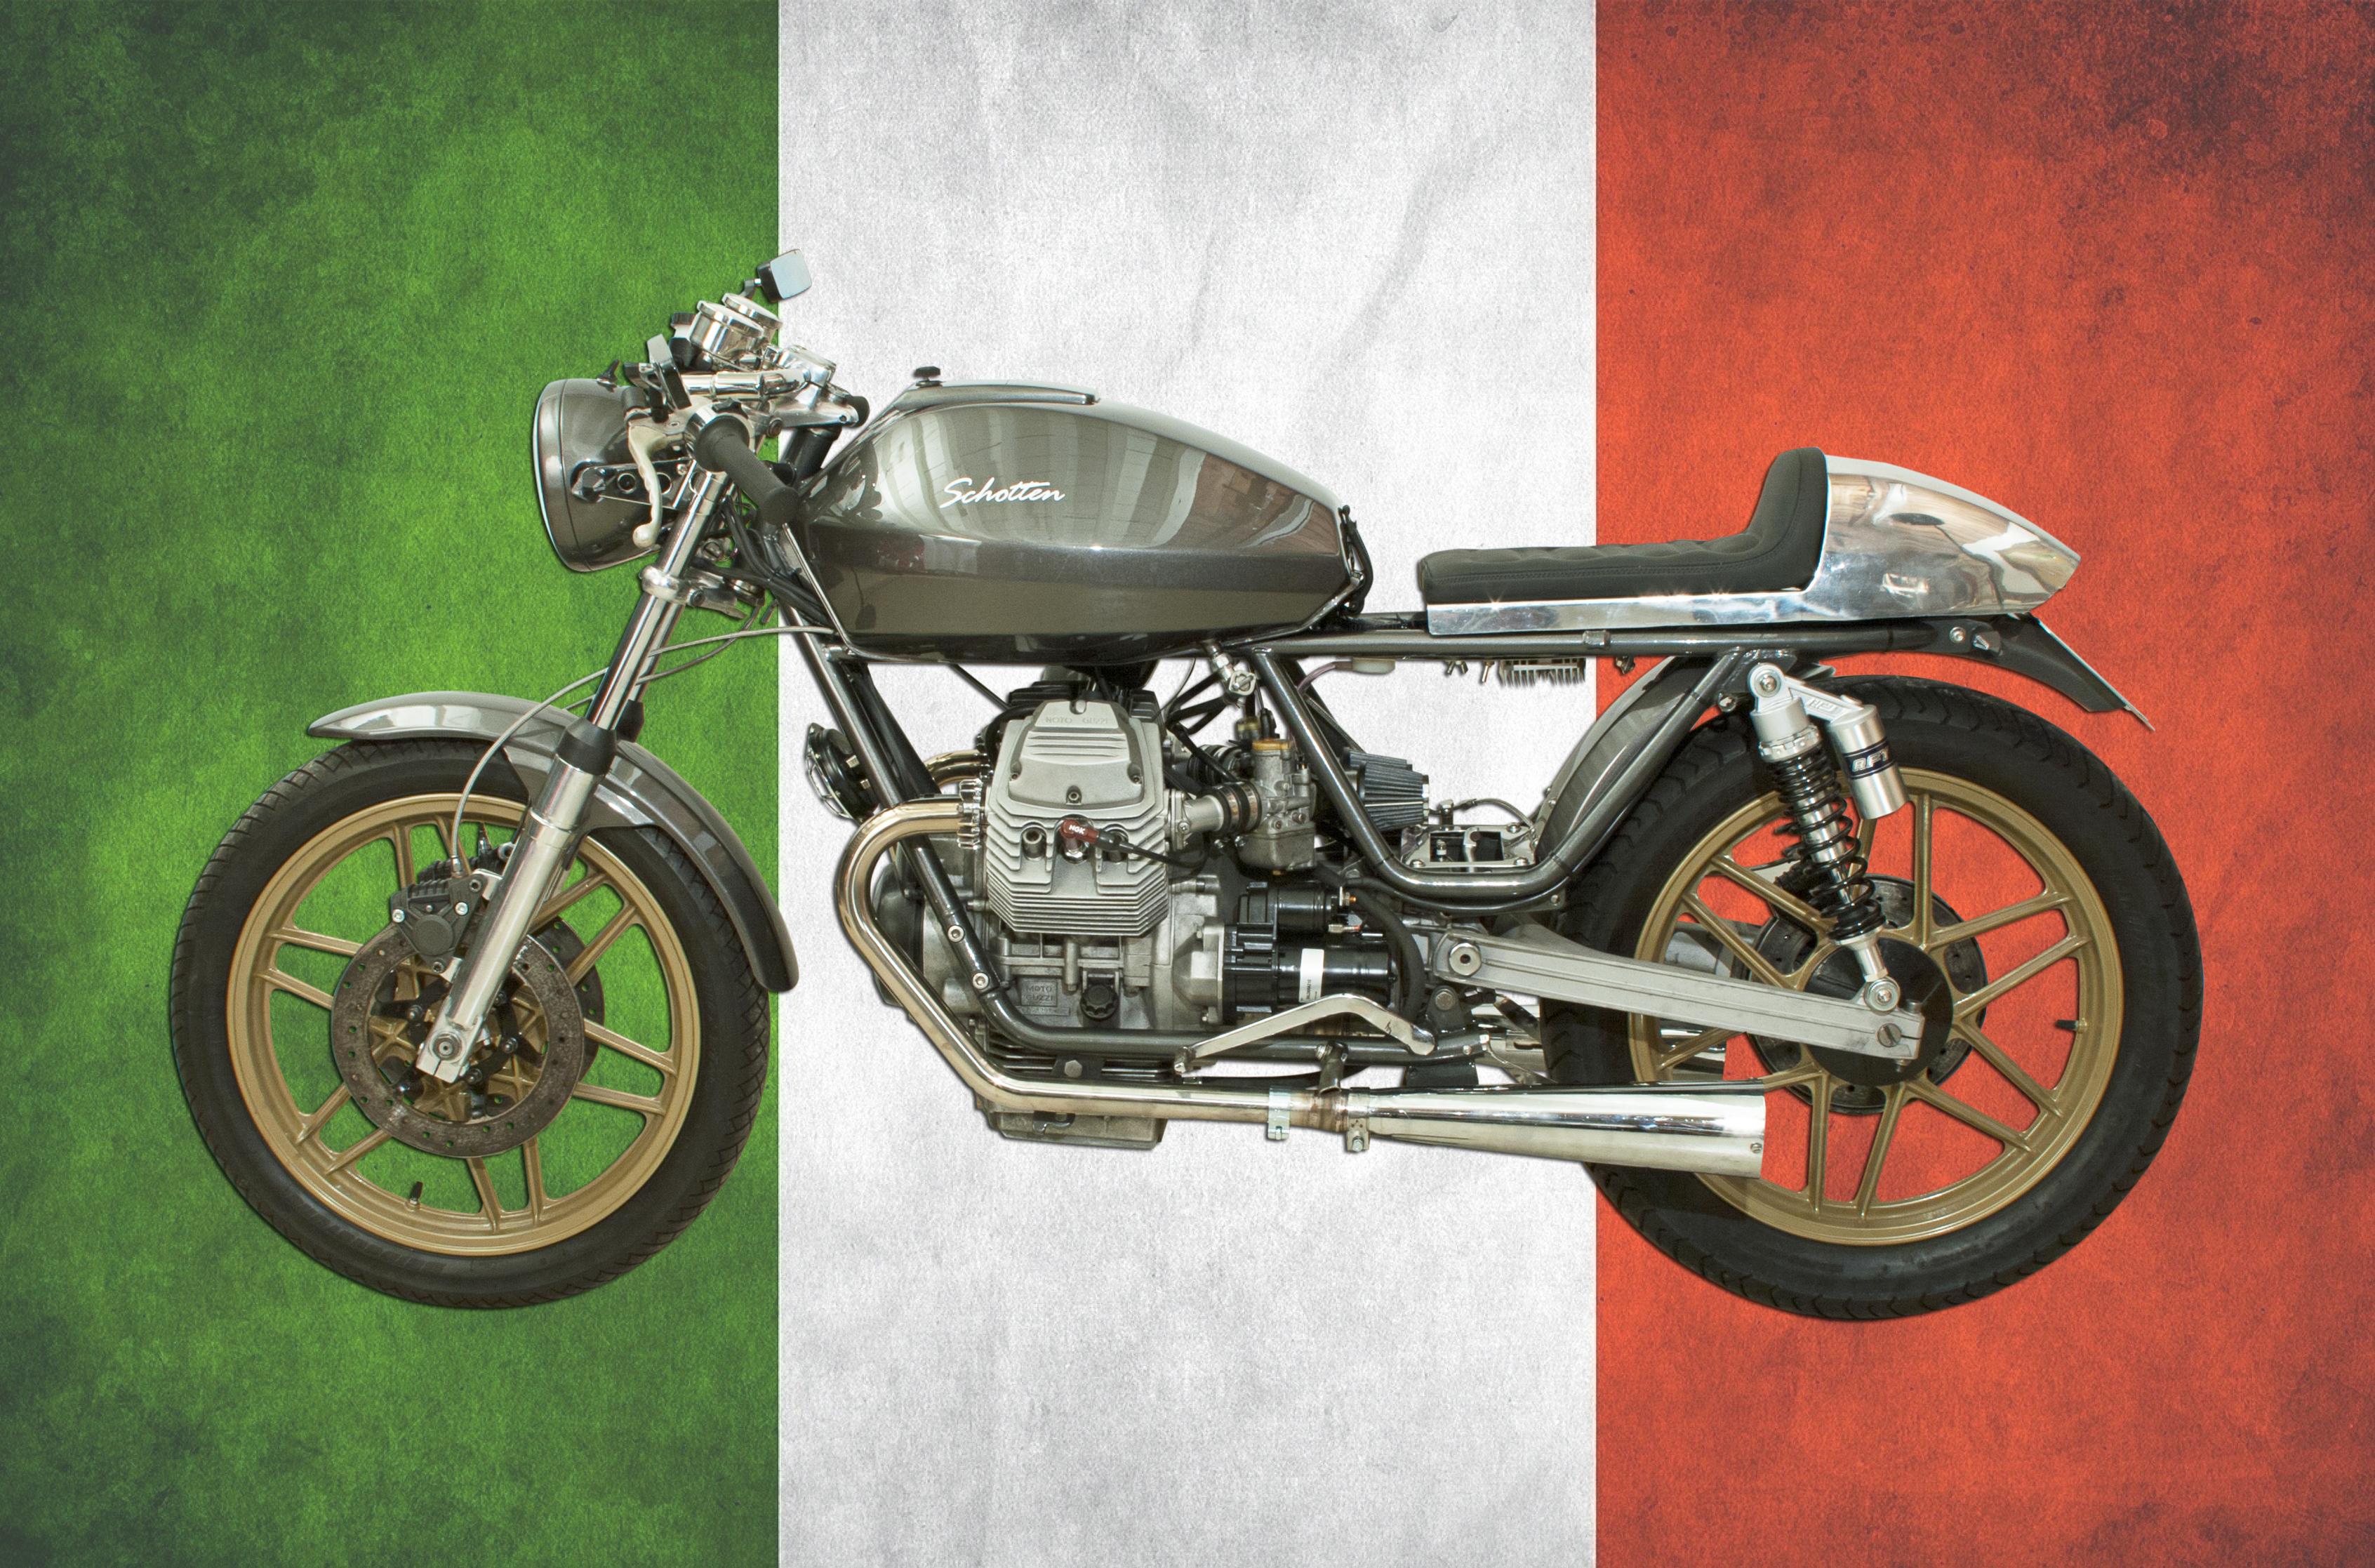 V50 Moto Guzzi Cafe Racer. 
Une magnifique Moto Guzzi café racer. Cette Moto Guzzi V50 personnalisée est une moto légère de 500 cm3 au design minimaliste, dotée d'un guidon bas et d'une selle placée à l'arrière.

Conformément à la tradition Guzzi,